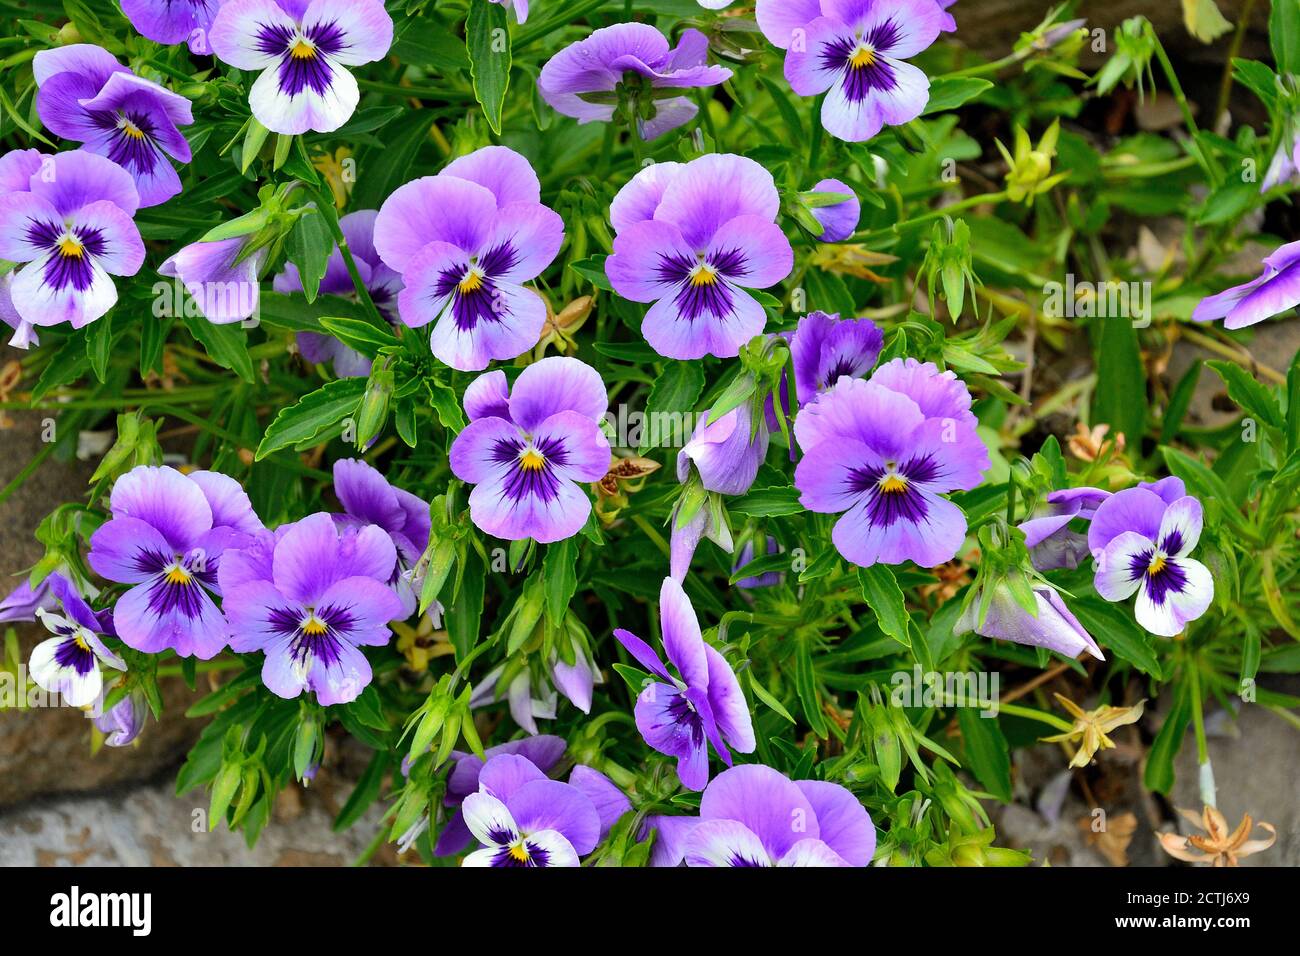 Gros plan de fleurs de pansy colorées dans le jardin. Le nom scientifique des pansies de jardin est Viola wittrockiana. Plante hybride ornementale à pétales violets b Banque D'Images